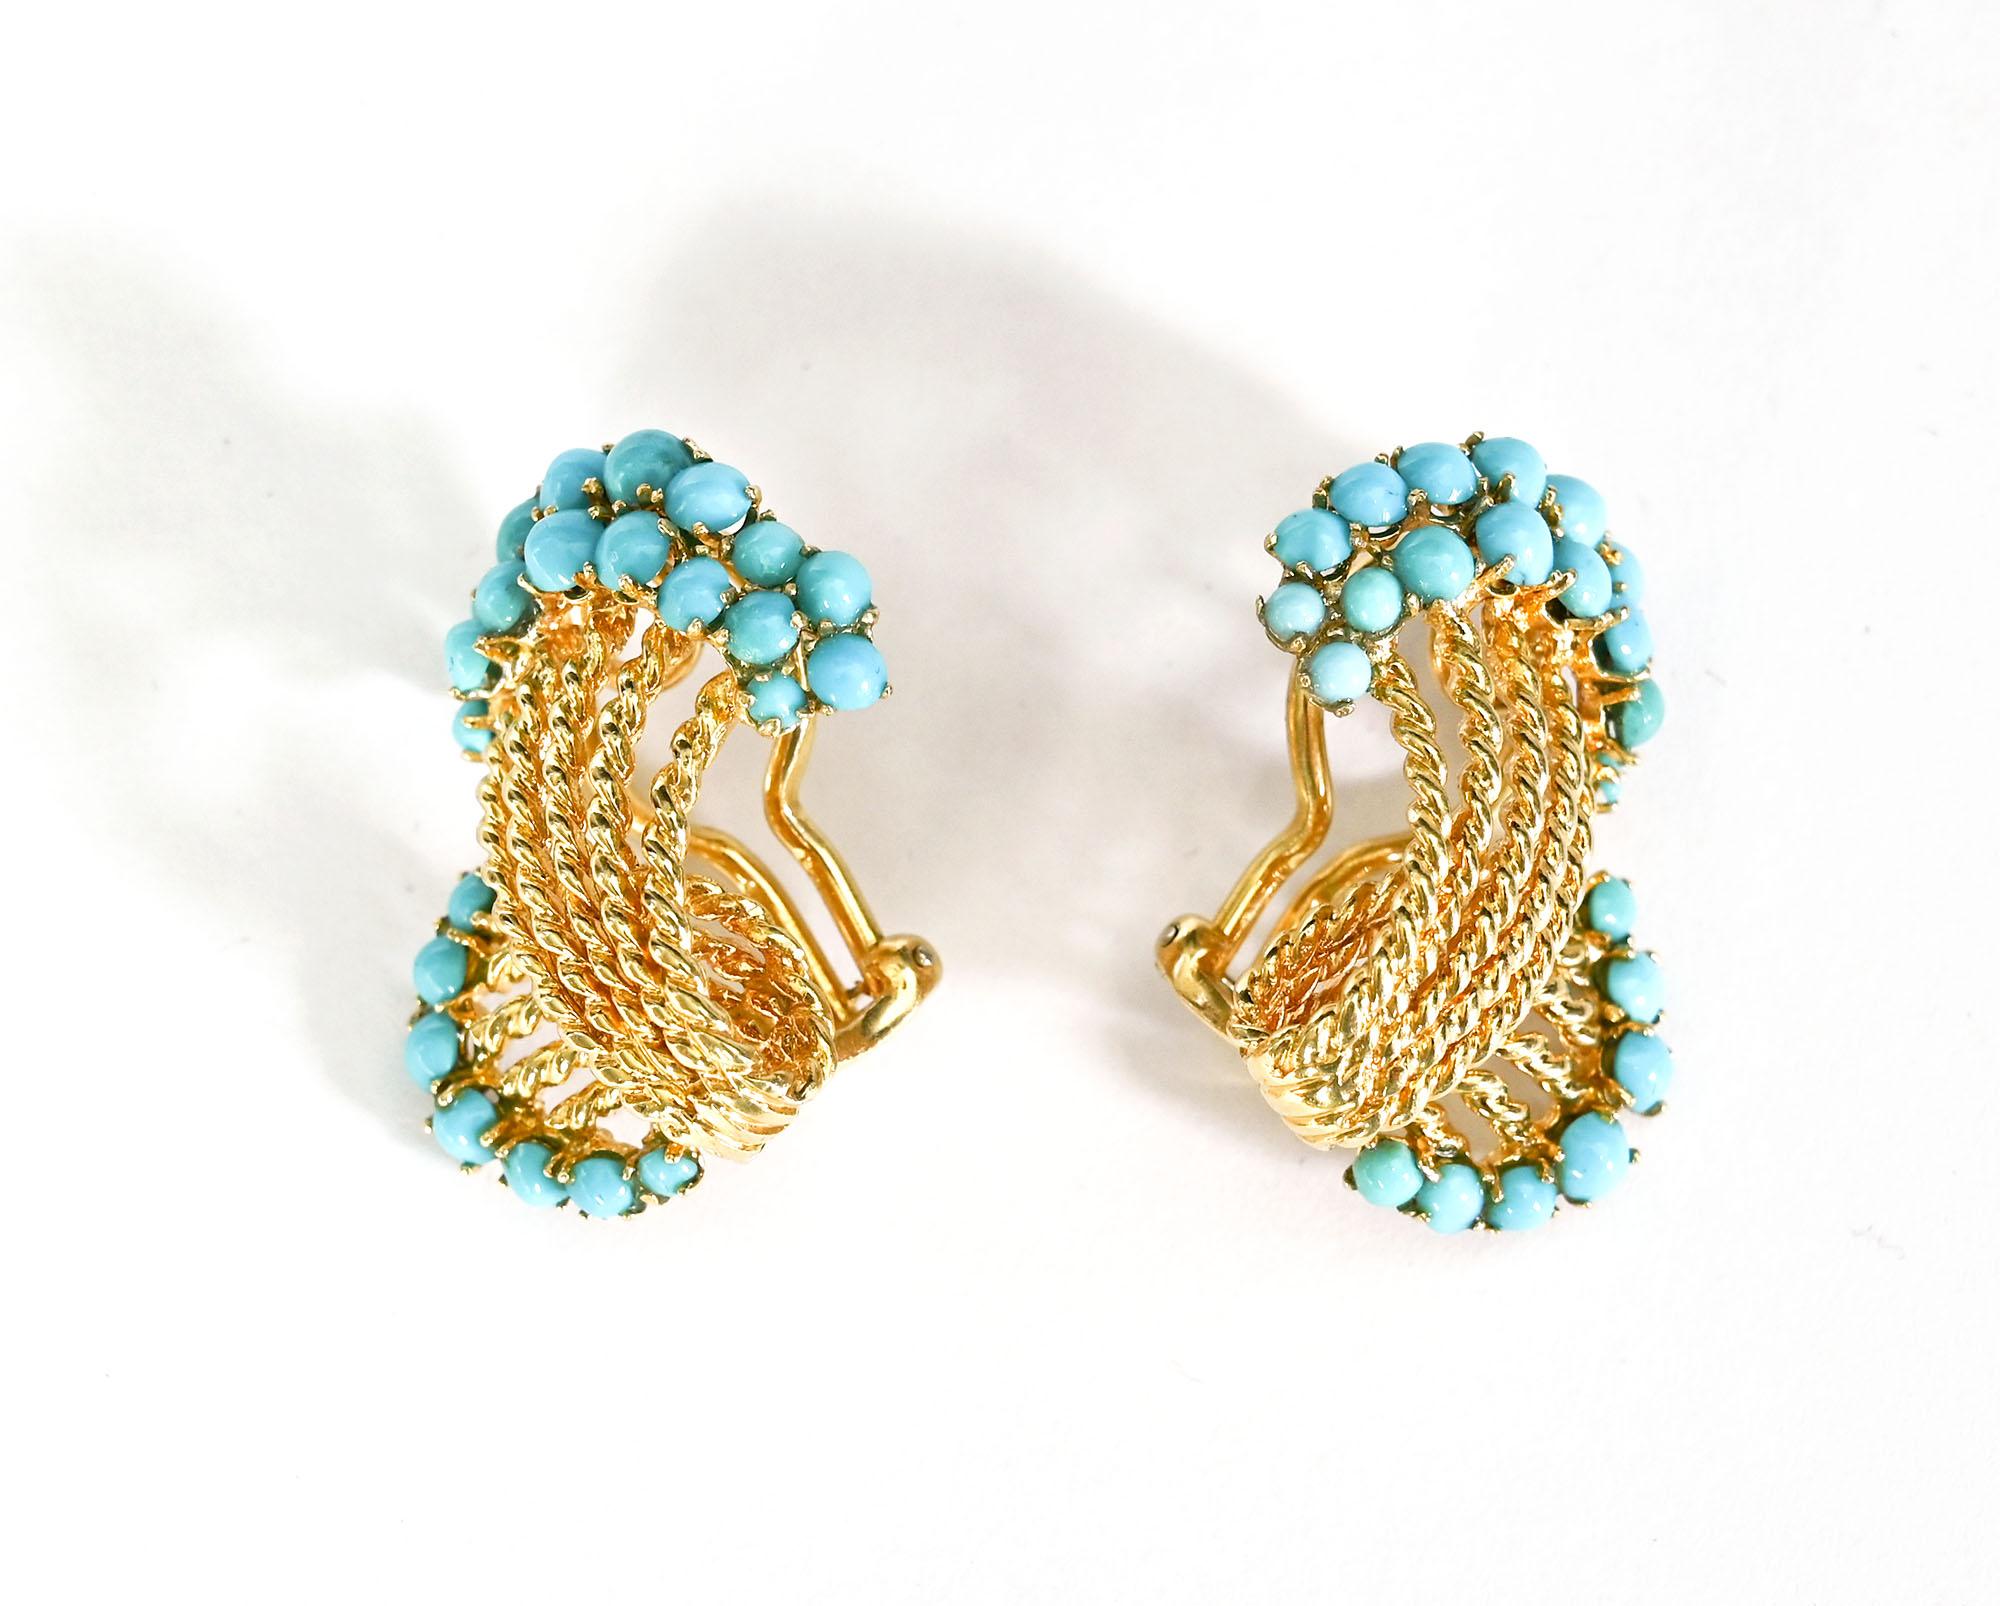 Wunderschöne, luftige Ohrringe aus 14 Karat gedrehtem Gold, die mit Cabochon-Türkissteinen besetzt sind.
Die Ohrringe sind 7/8